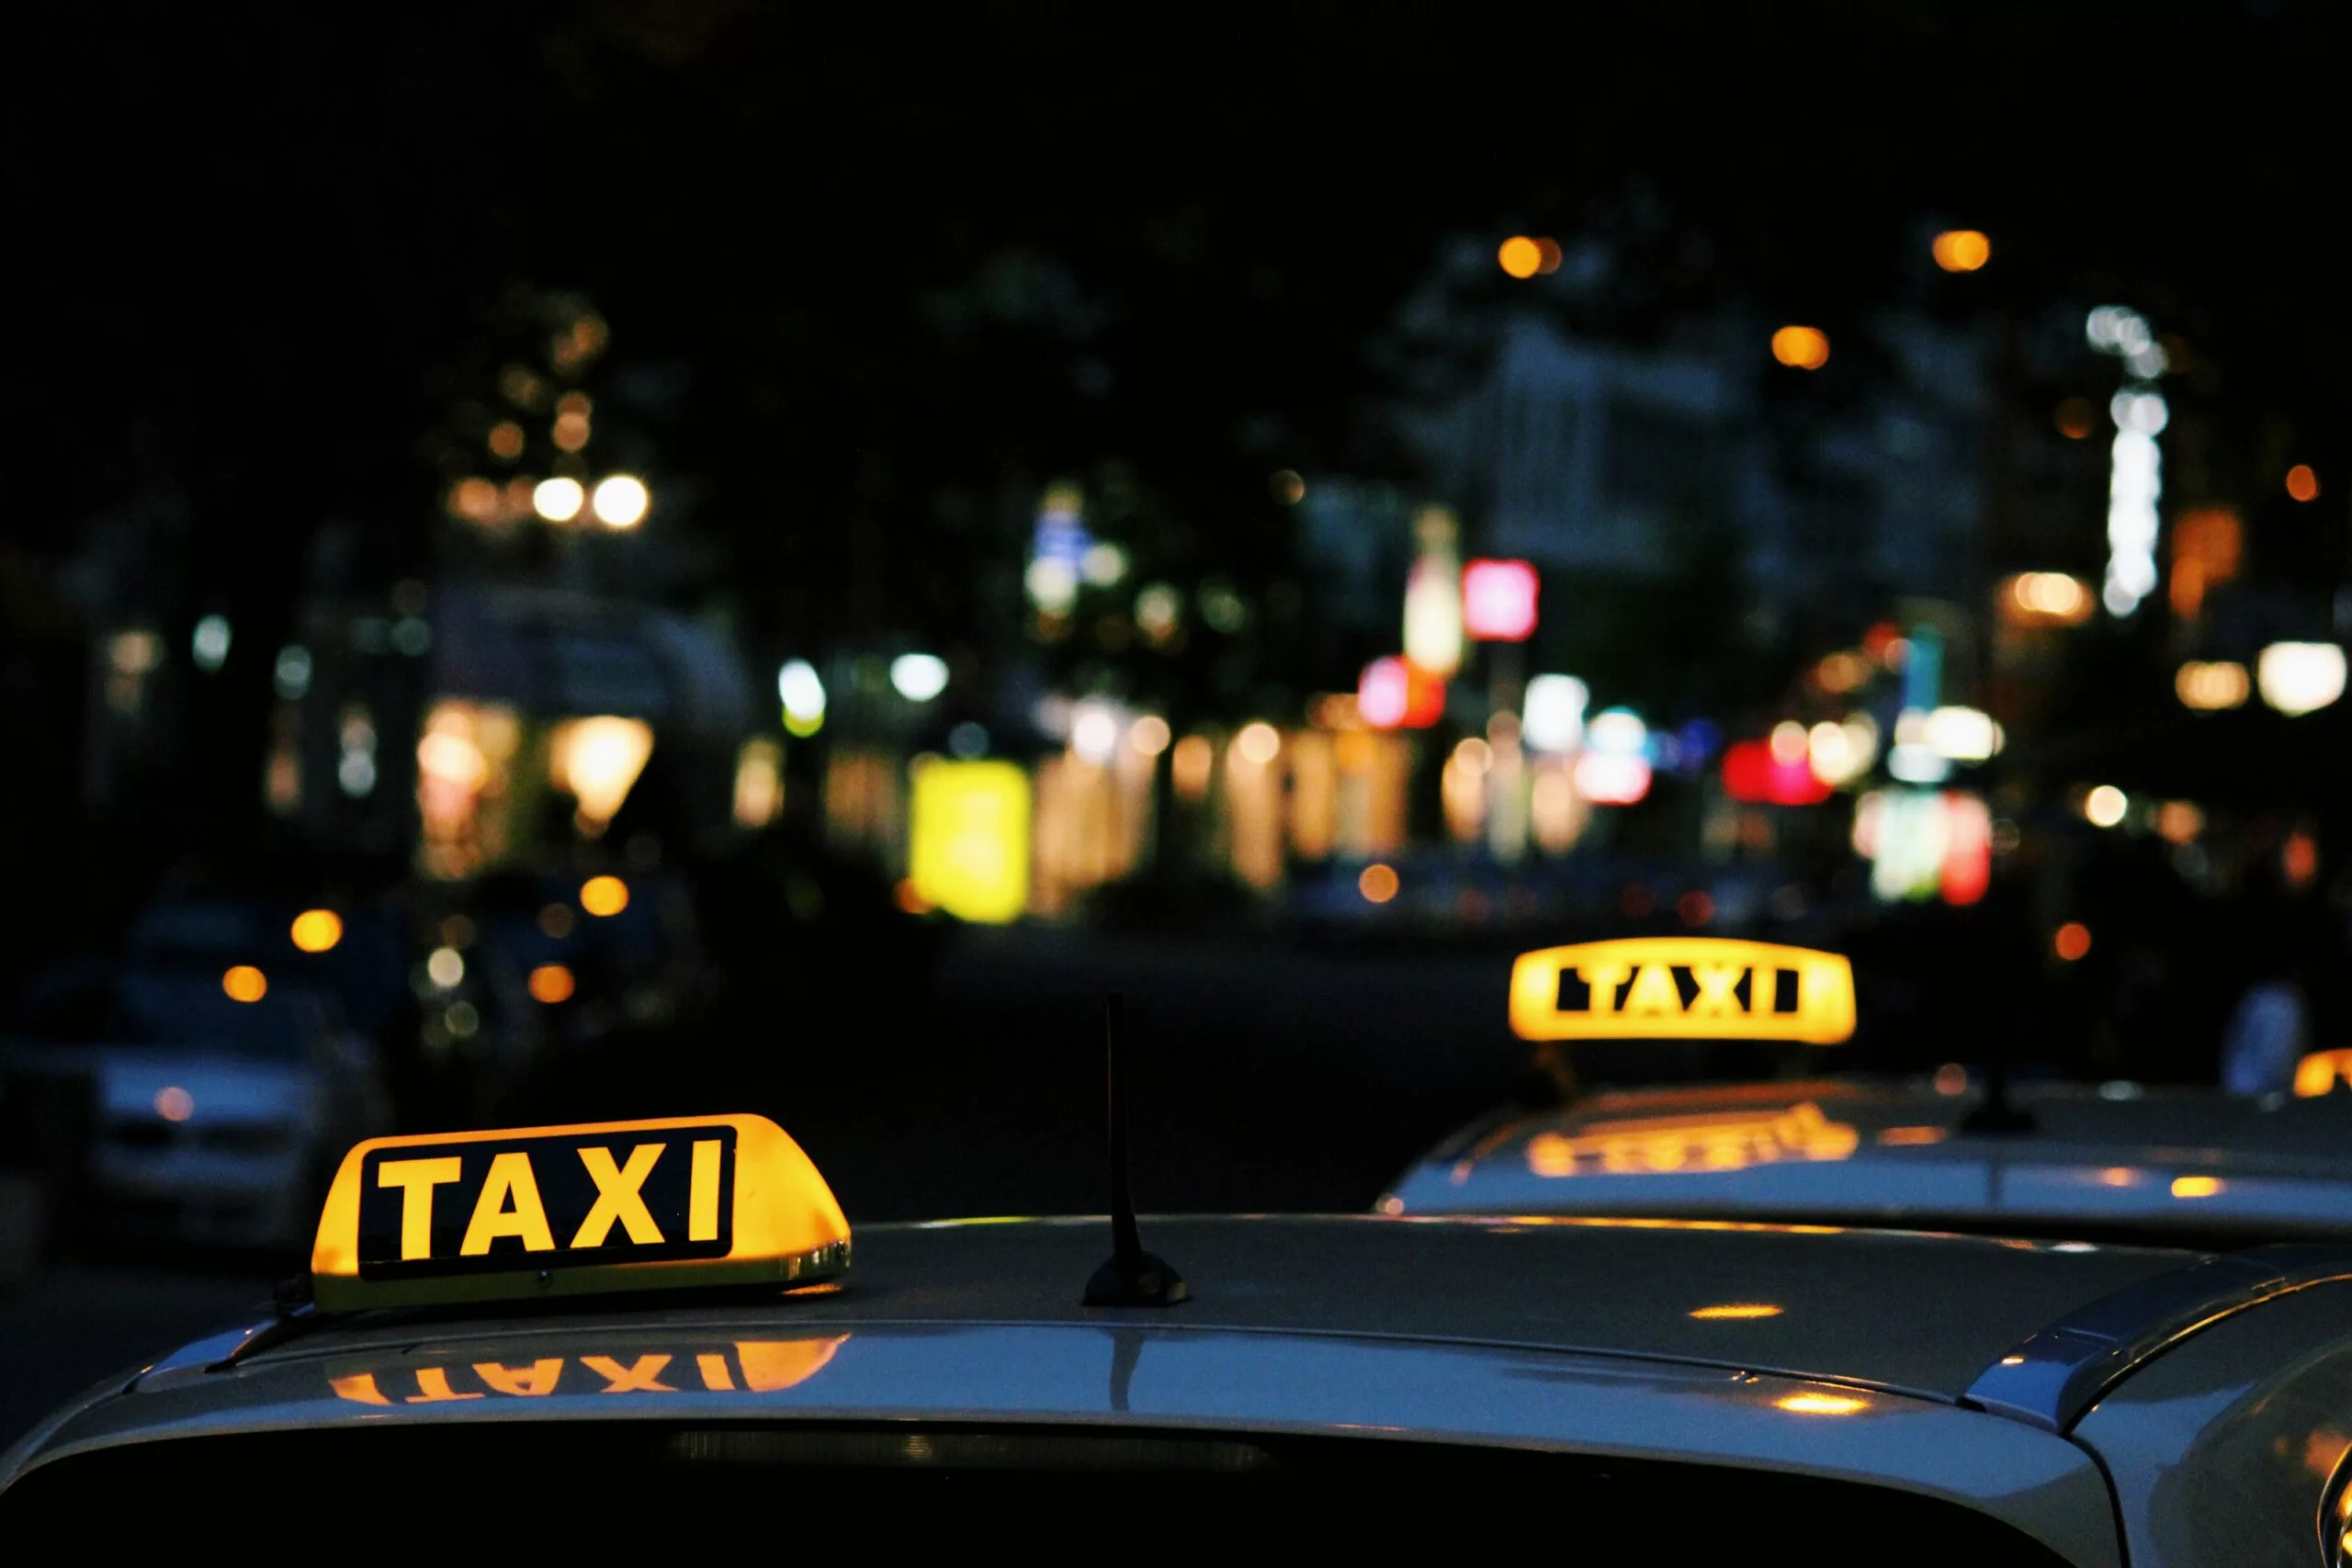 Rufen Sie sich jetzt ein Taxi in Düsseldorf von Comfort Cars. Stilvoller können Sie nicht reisen.